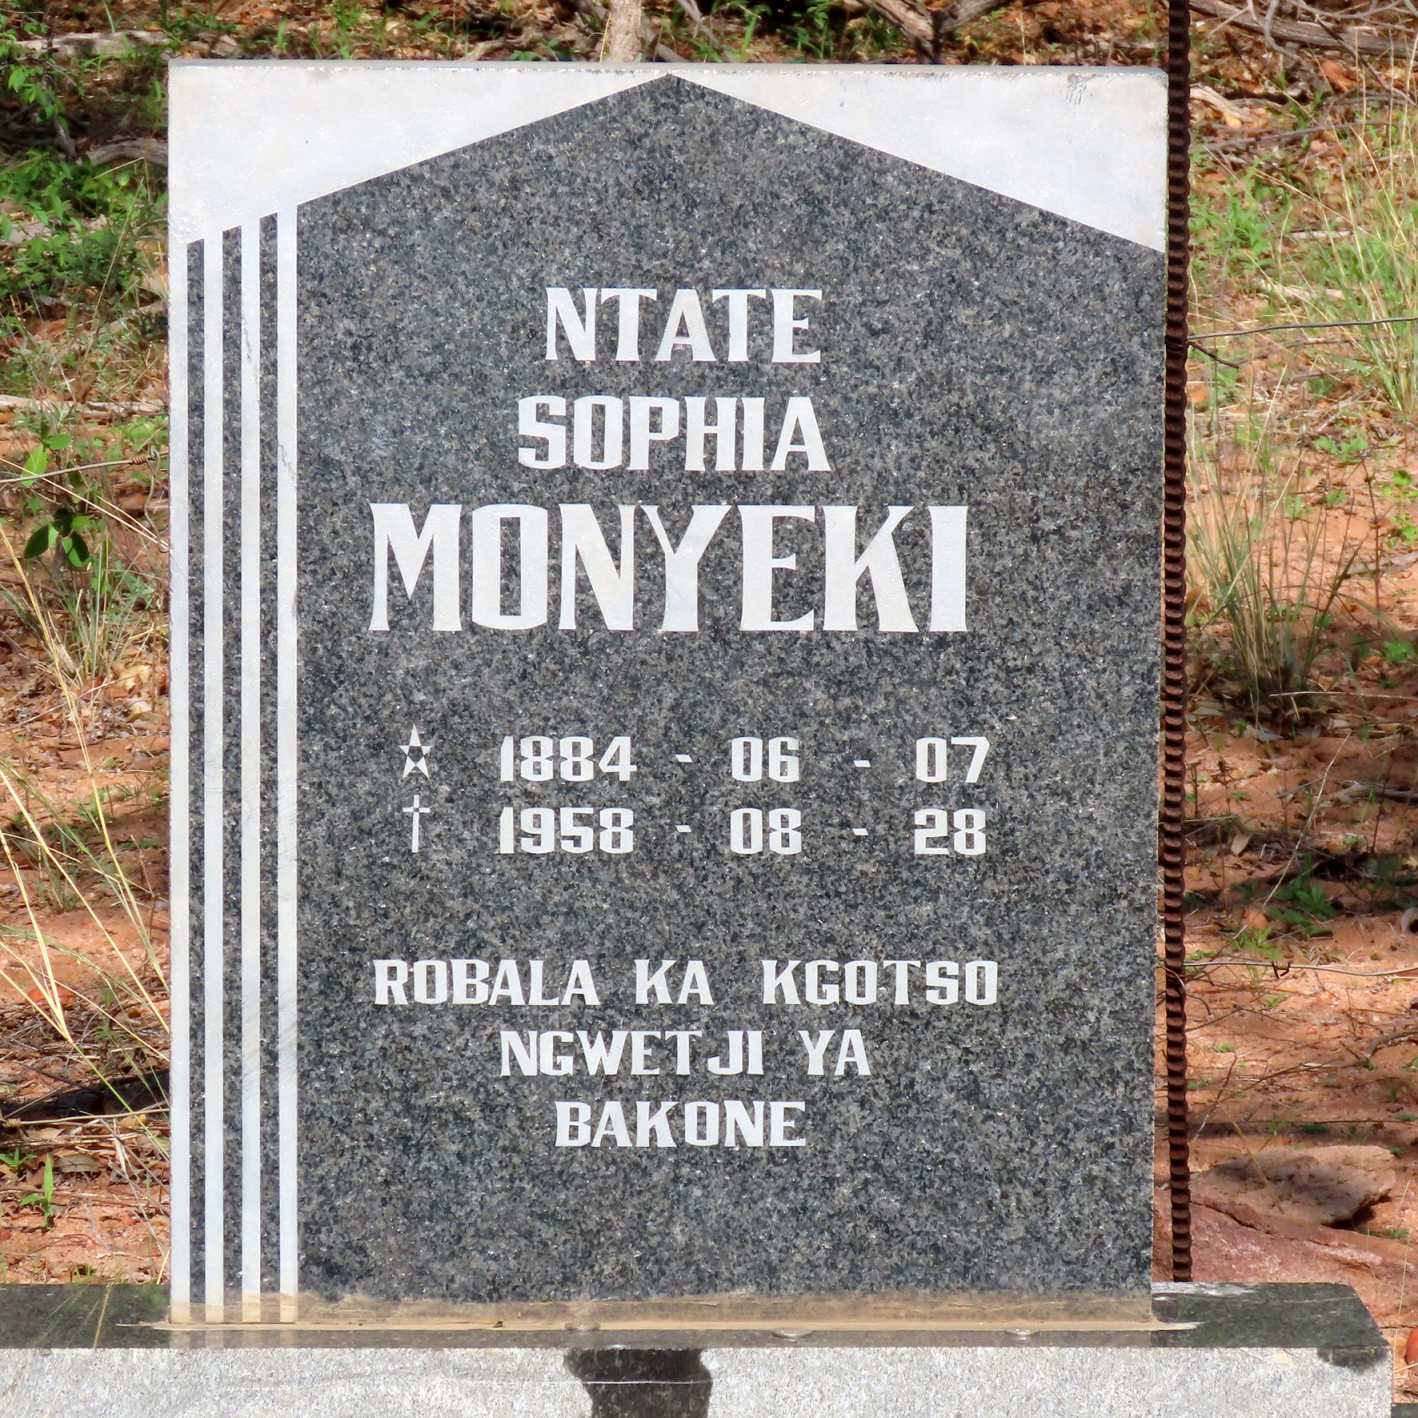 MONYEKI Ntate Sophia 1884-1958